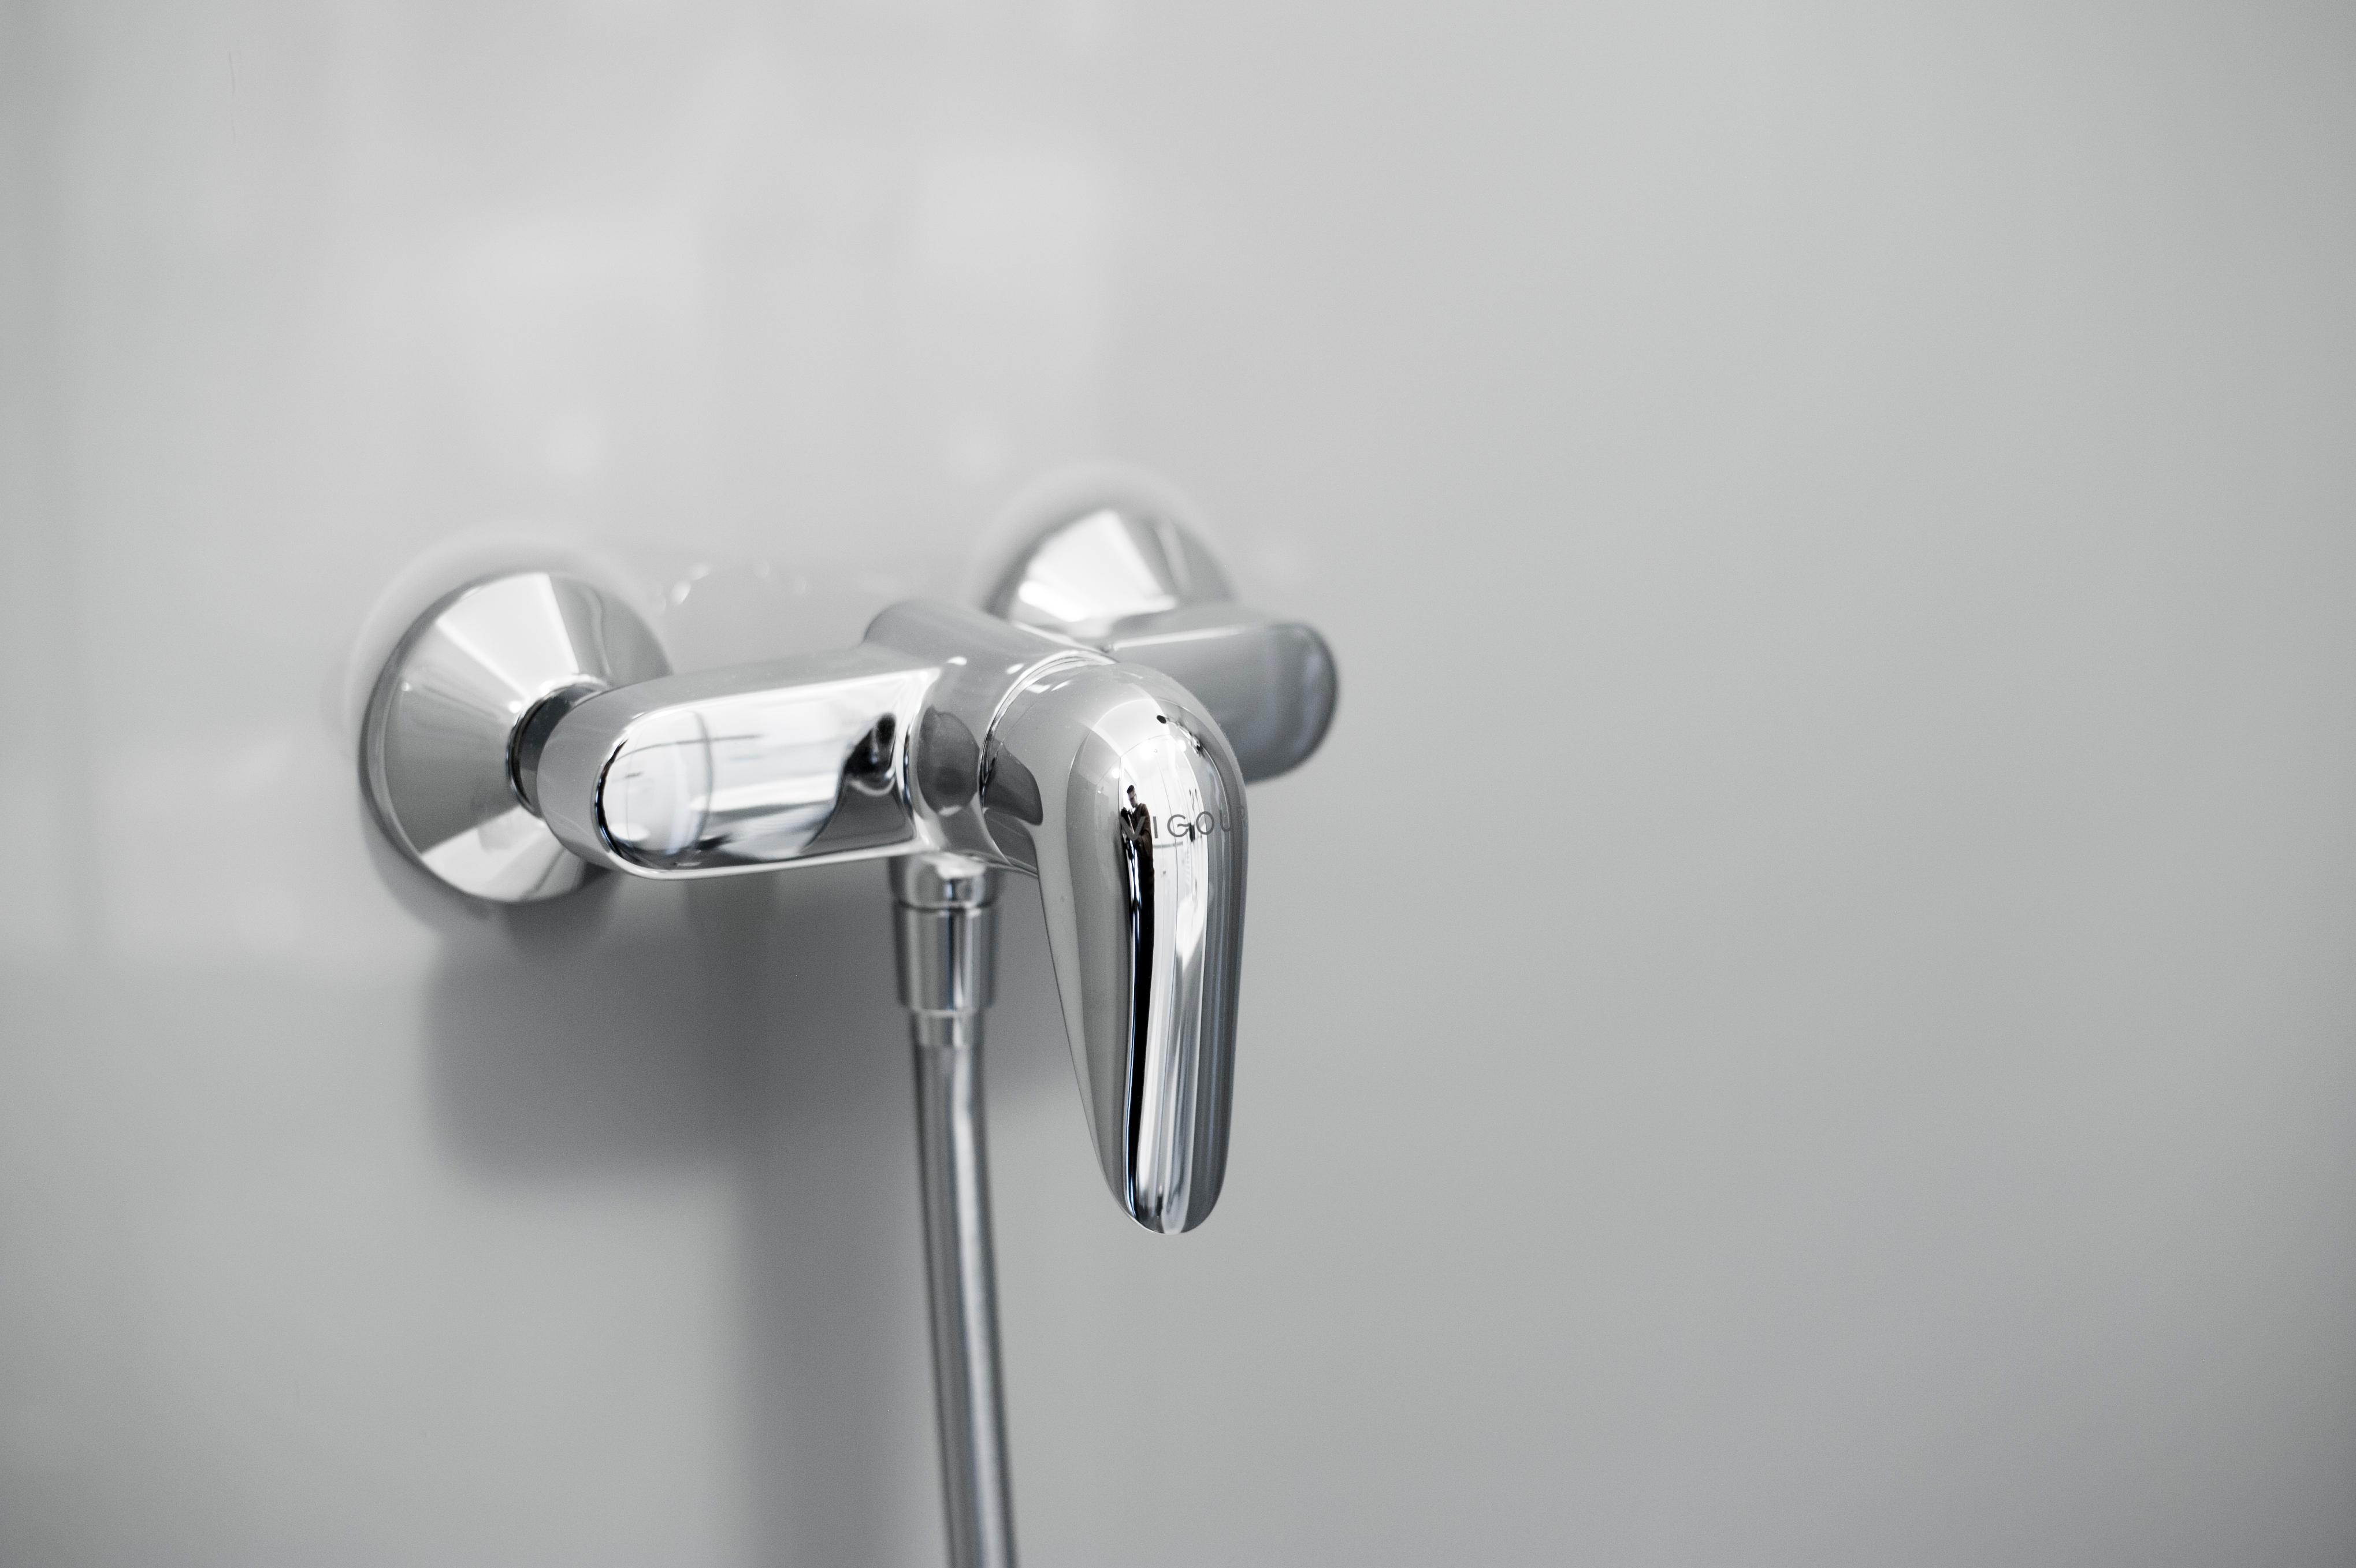 Glas Dusche rückseitig grau lackiert als Duschrückwand #badezimmer #laminat #duschrückwand ©Layerprint.de